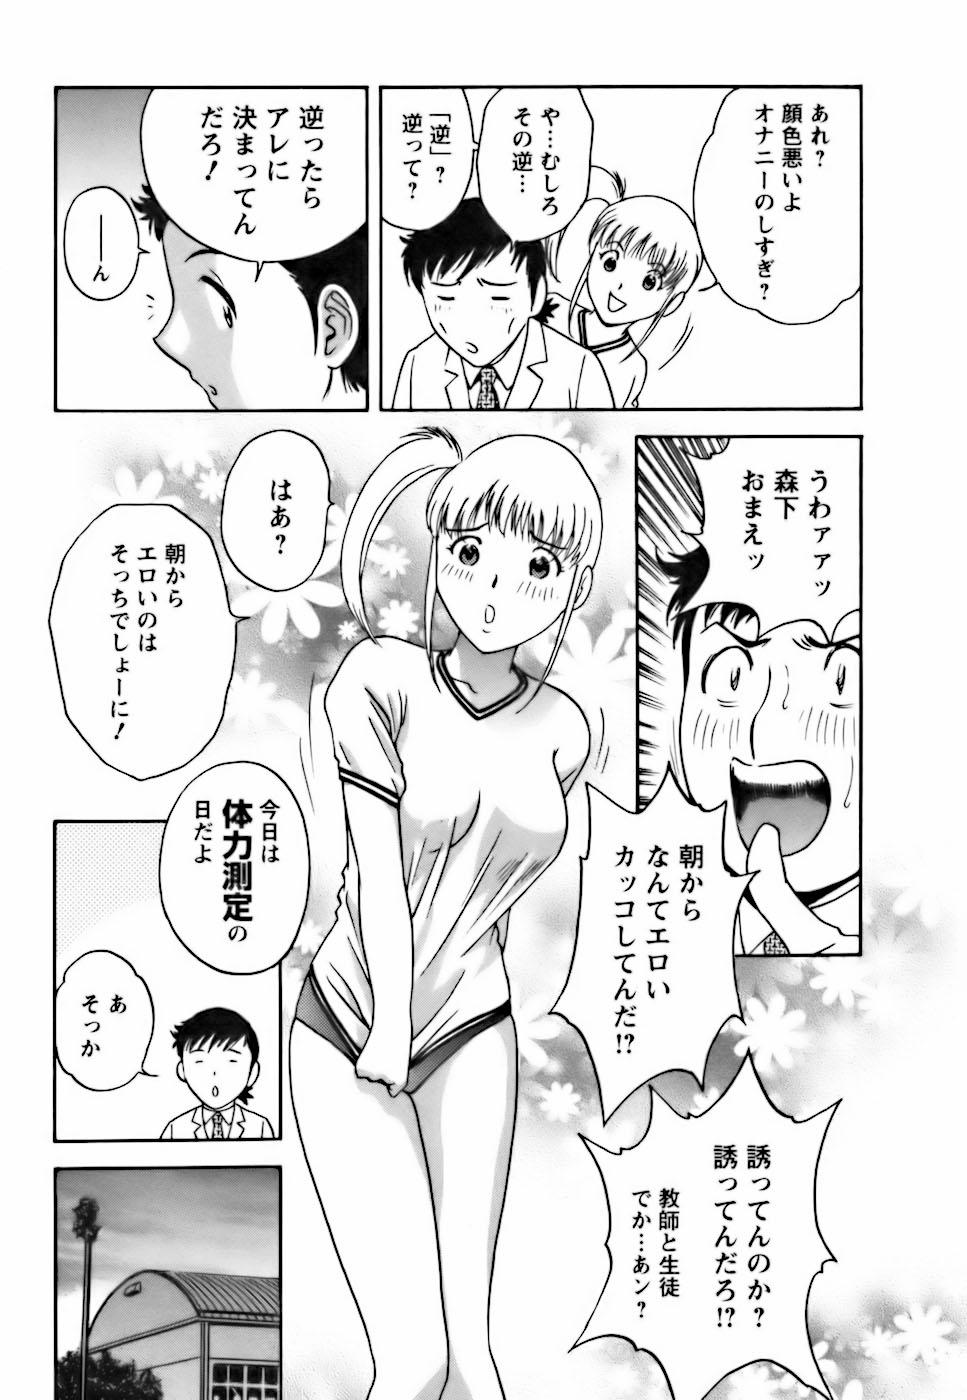 [Hidemaru] Mo-Retsu! Boin Sensei (Boing Boing Teacher) Vol.3 10